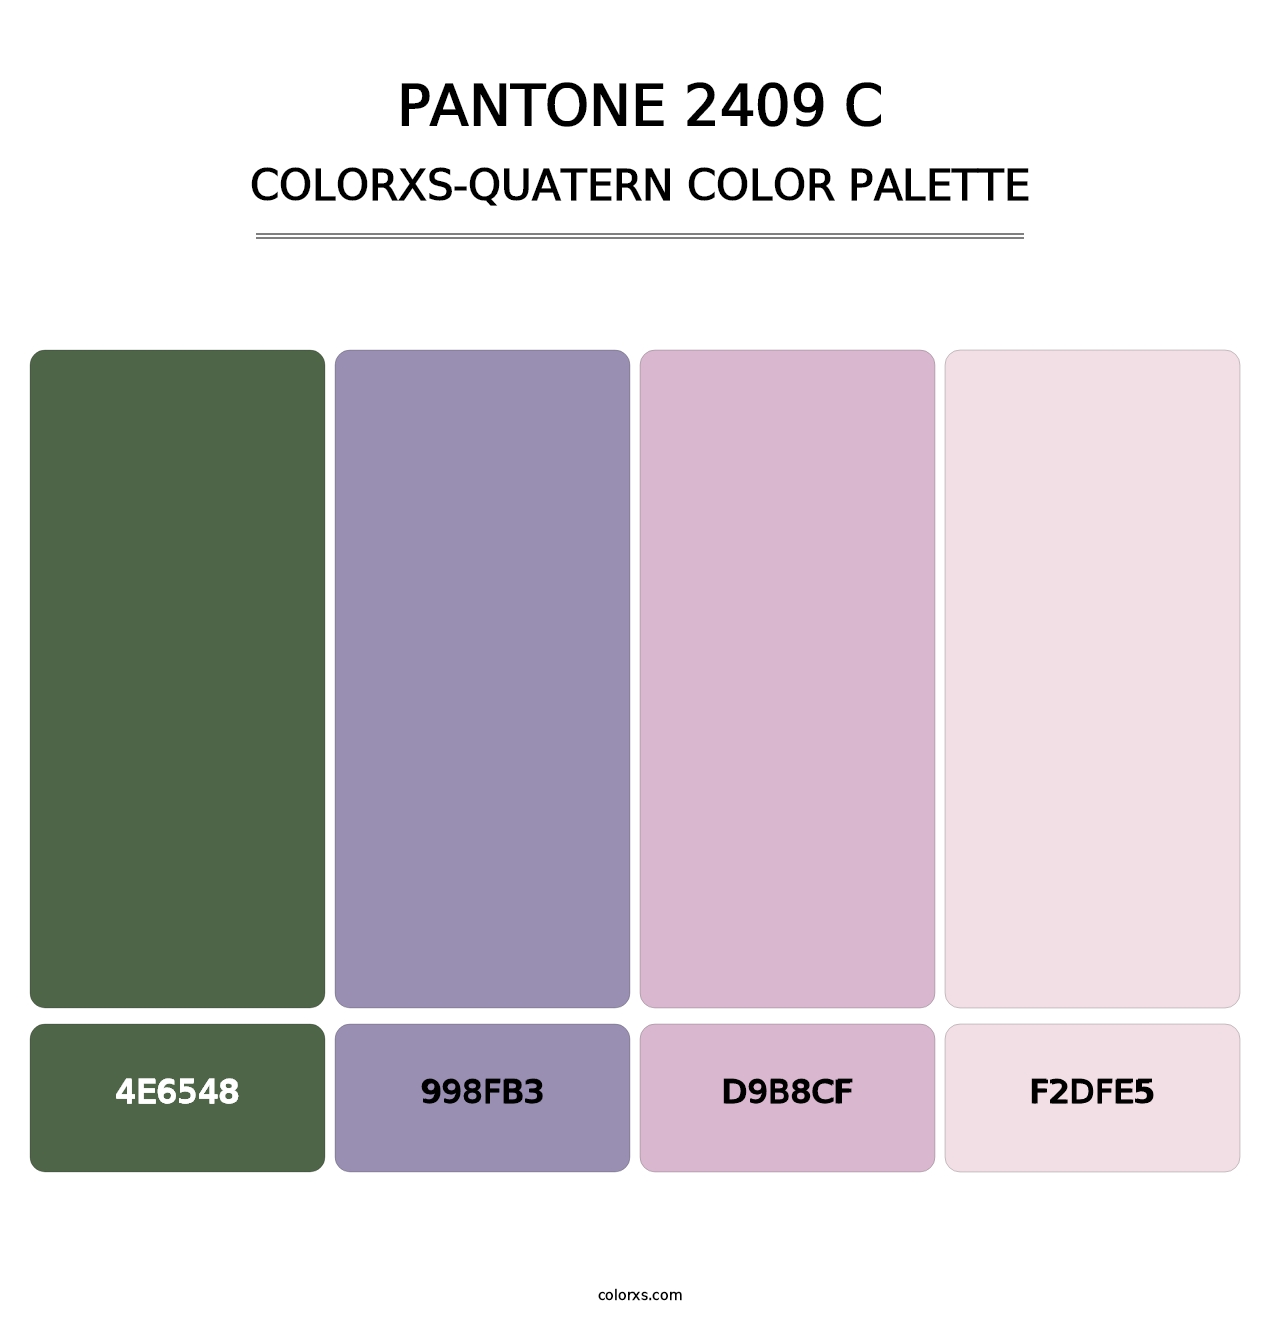 PANTONE 2409 C - Colorxs Quatern Palette